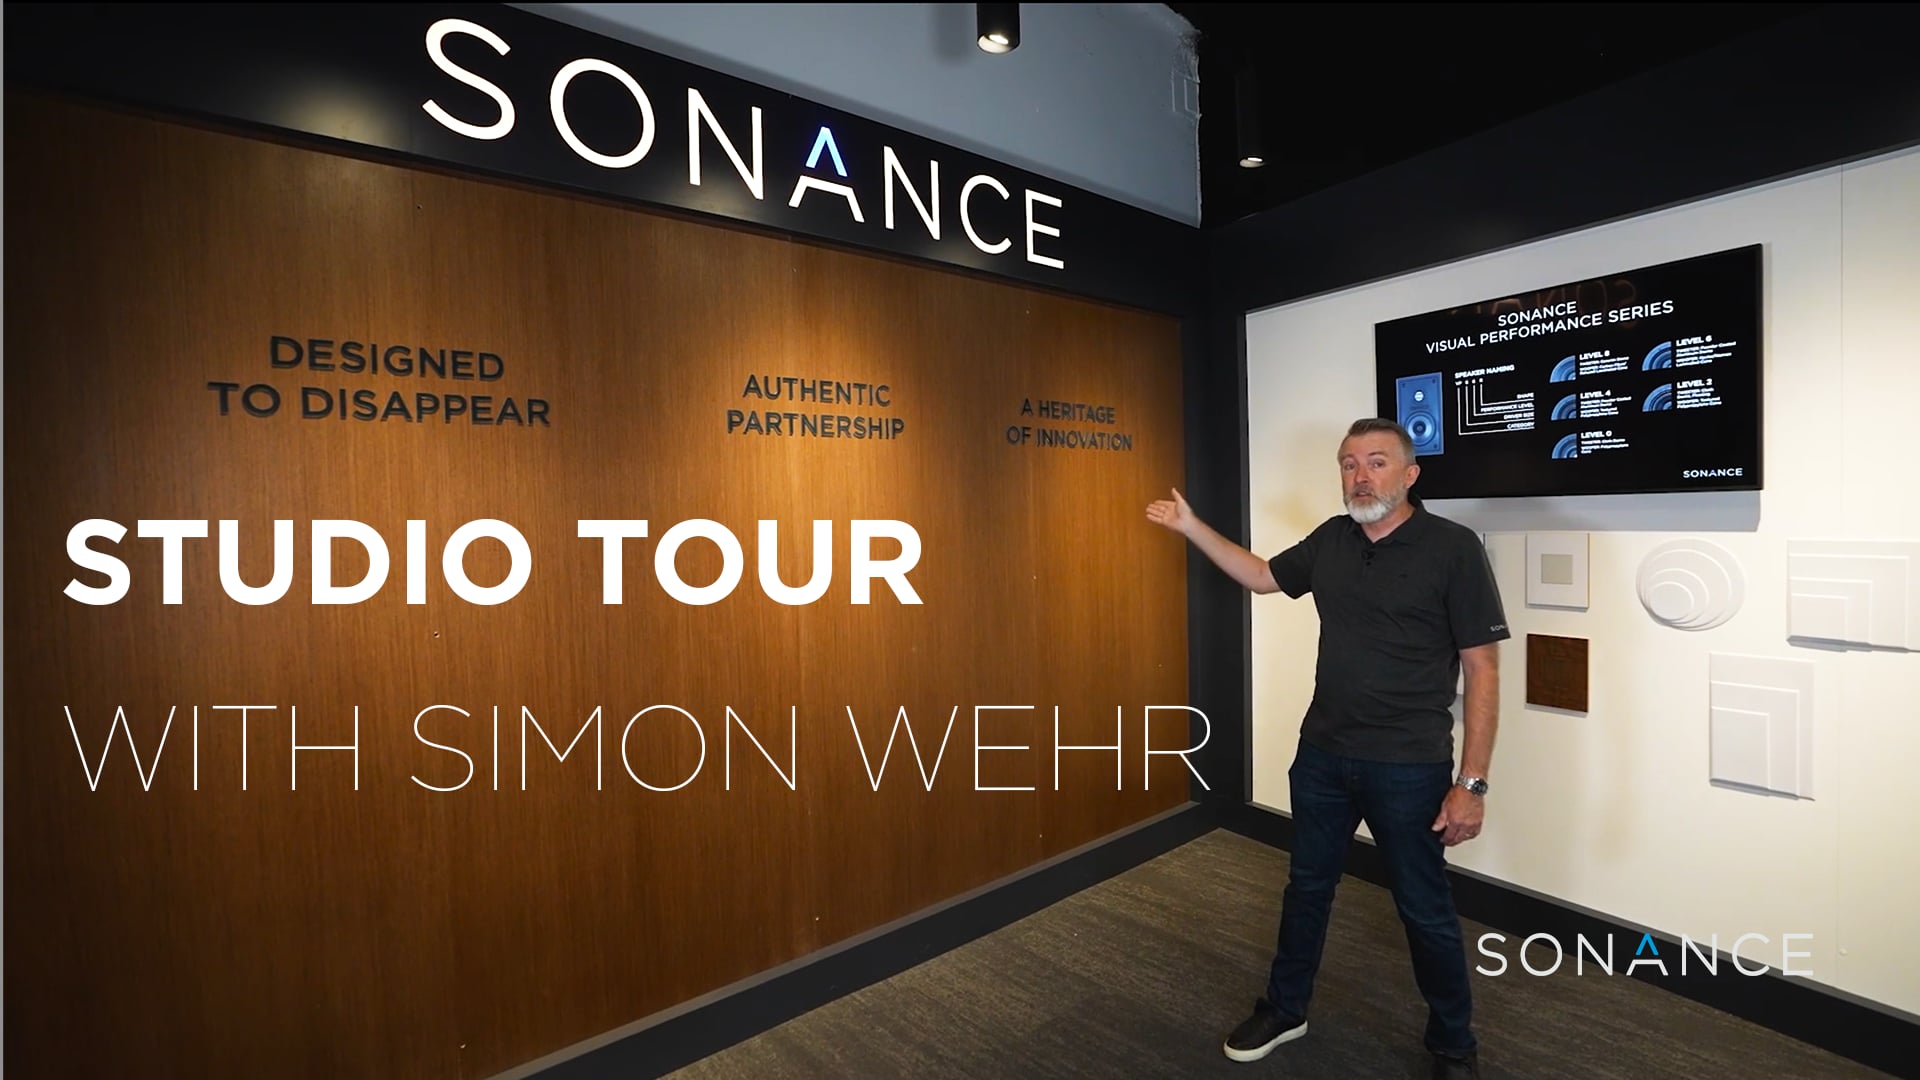 Sonance Studio Tour with Simon Wehr